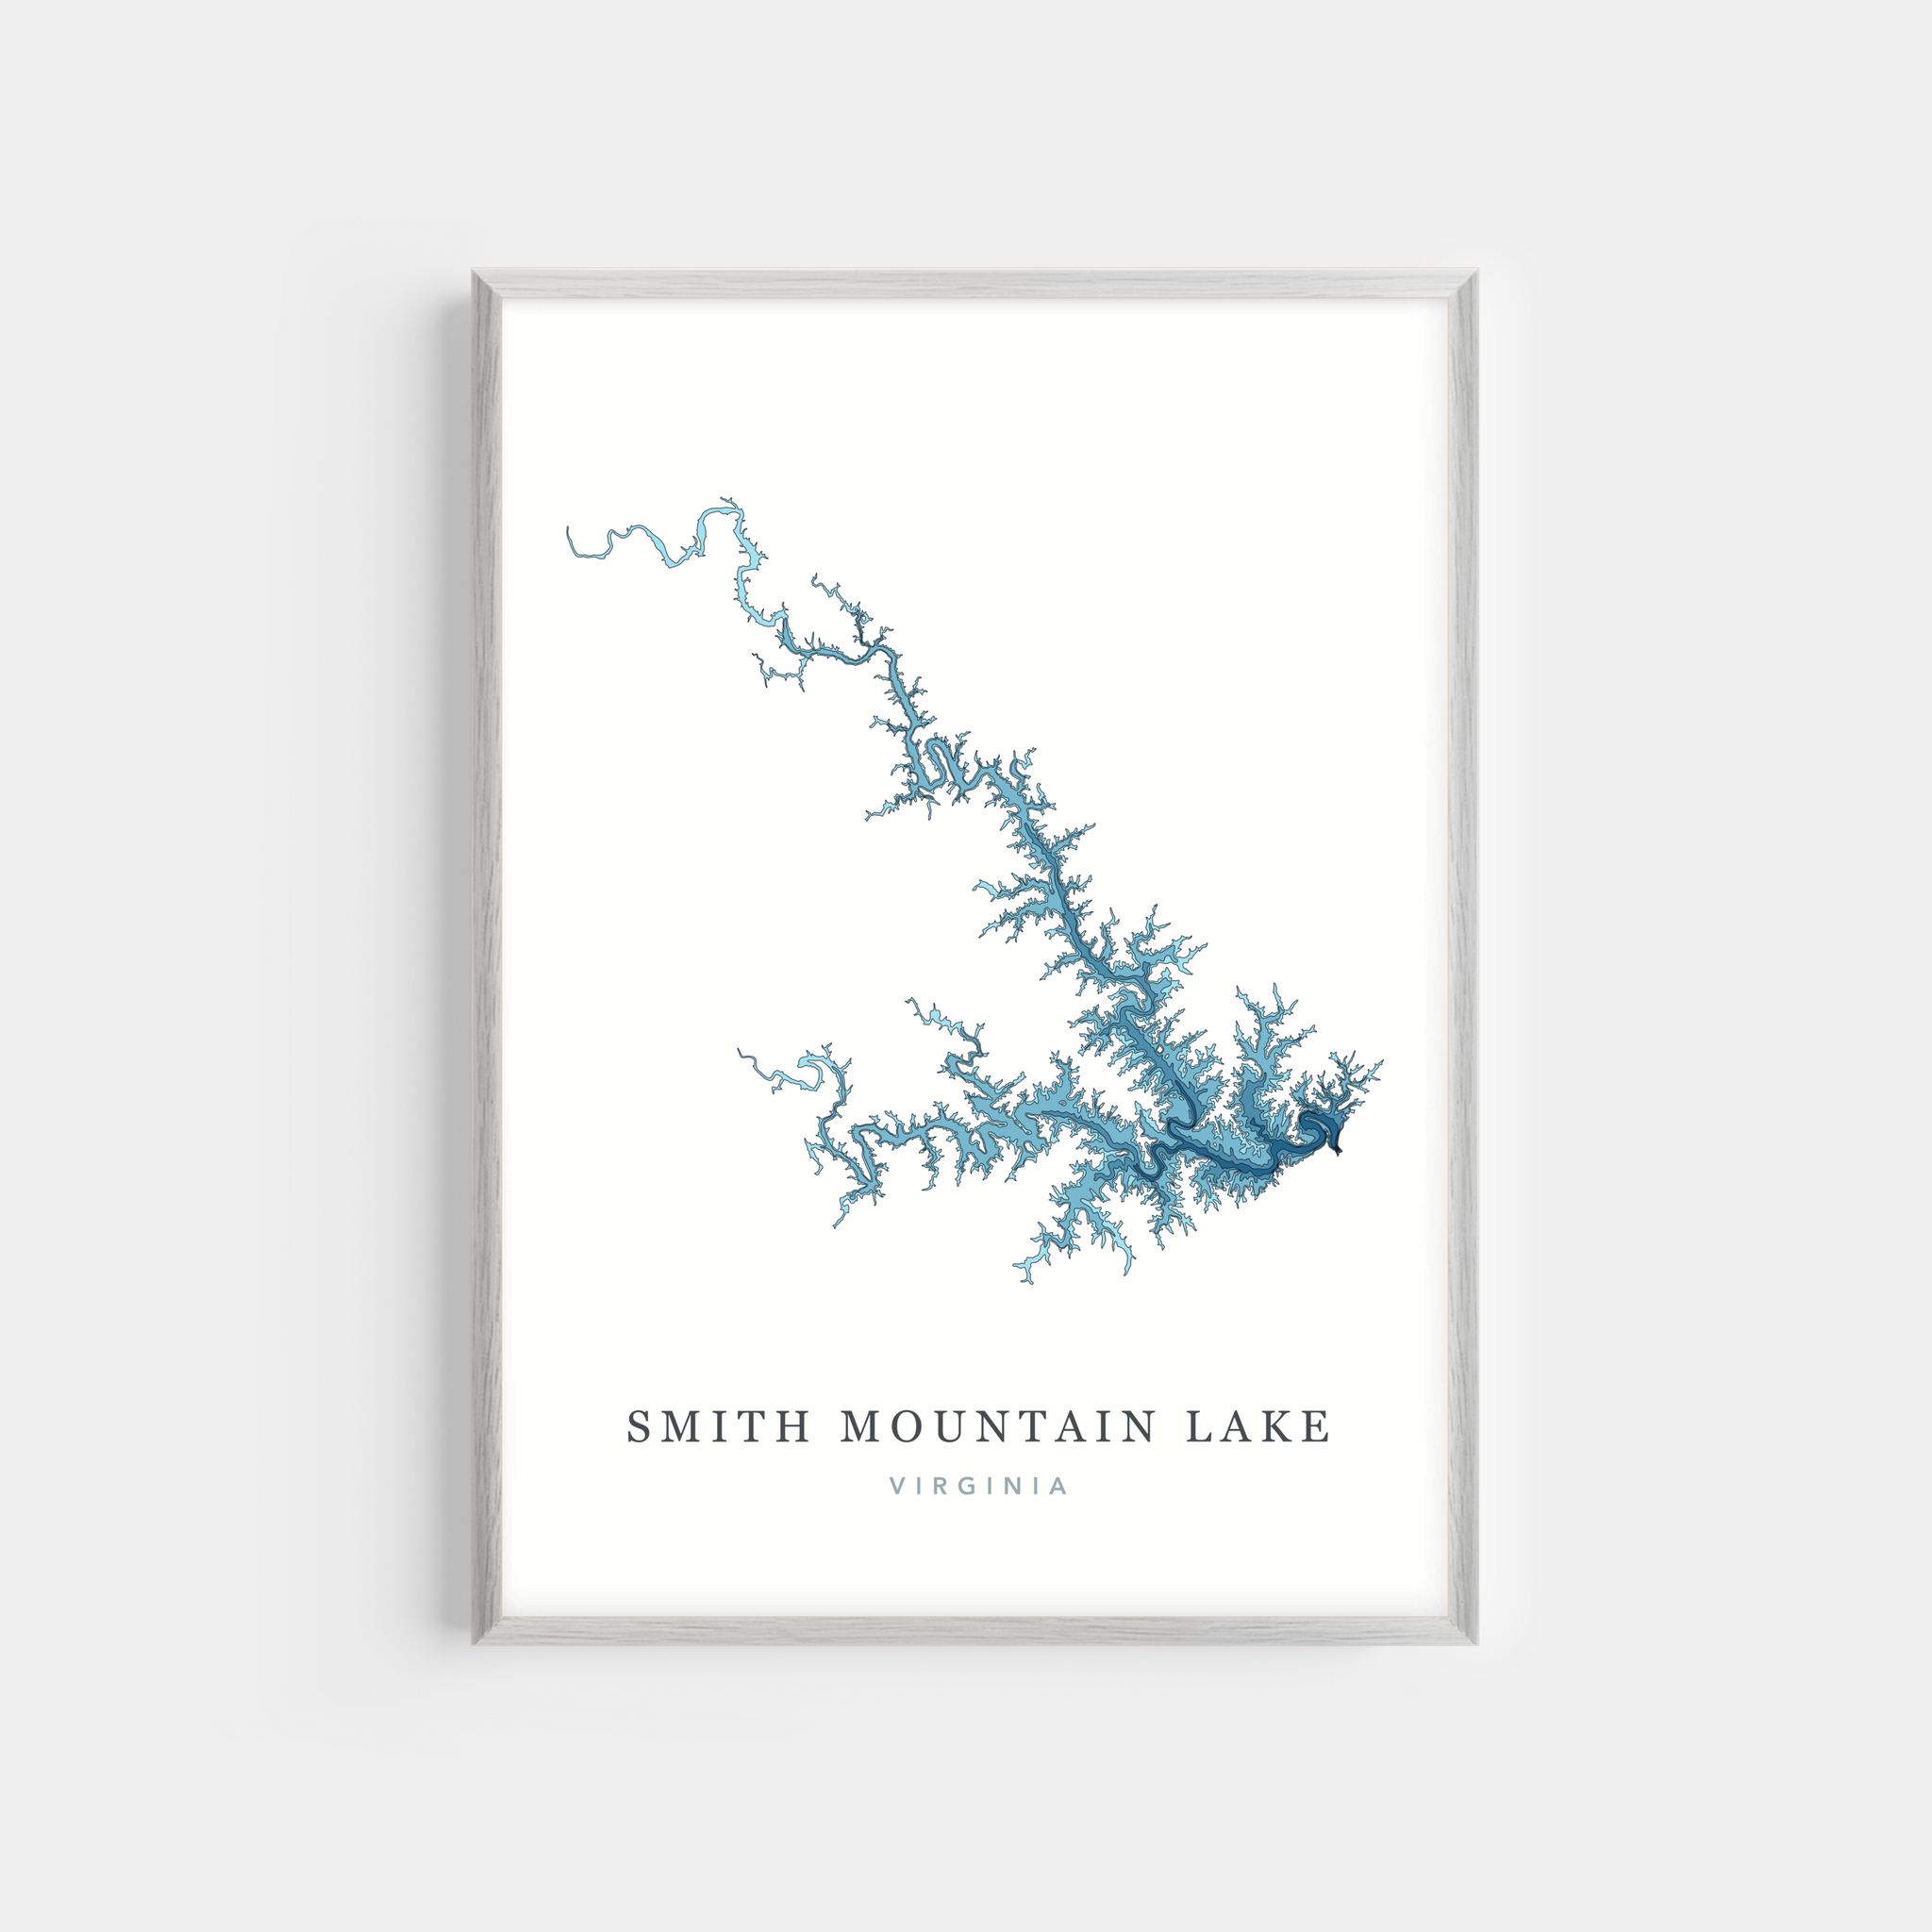 Smith Mountain Lake, Virginia | Photo Print